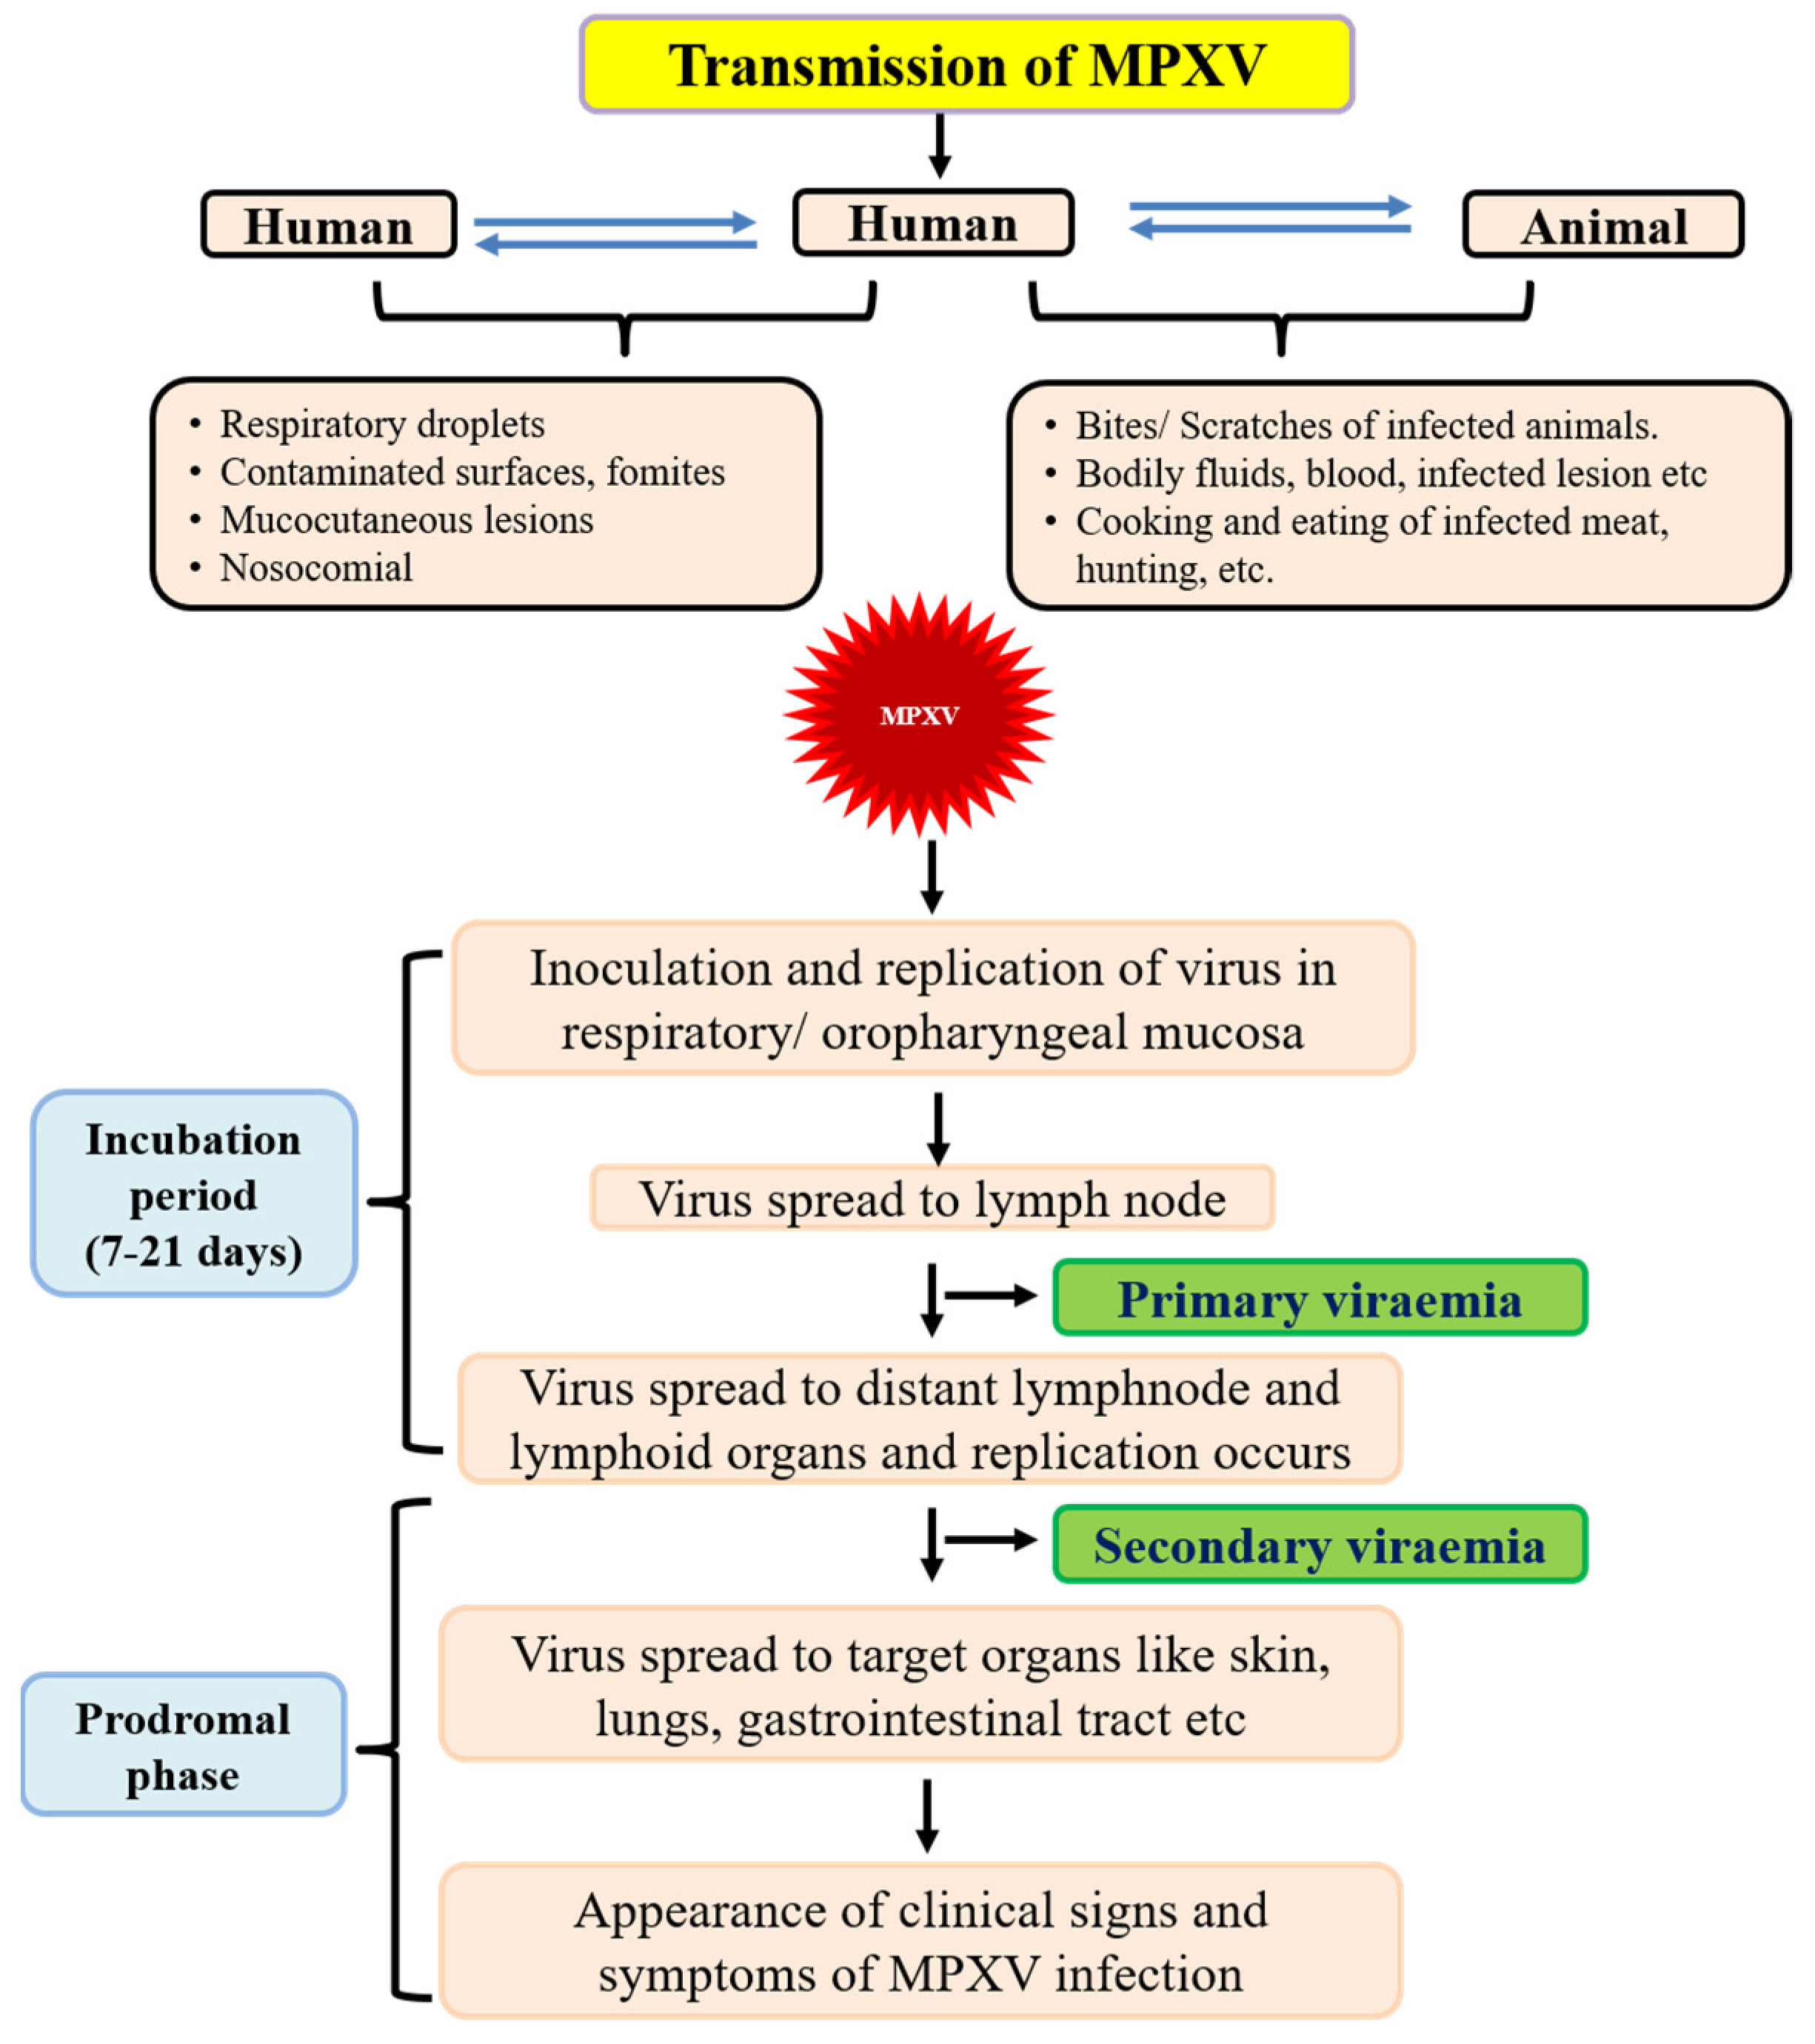 Evidence of human-to-dog transmission of monkeypox virus - The Lancet